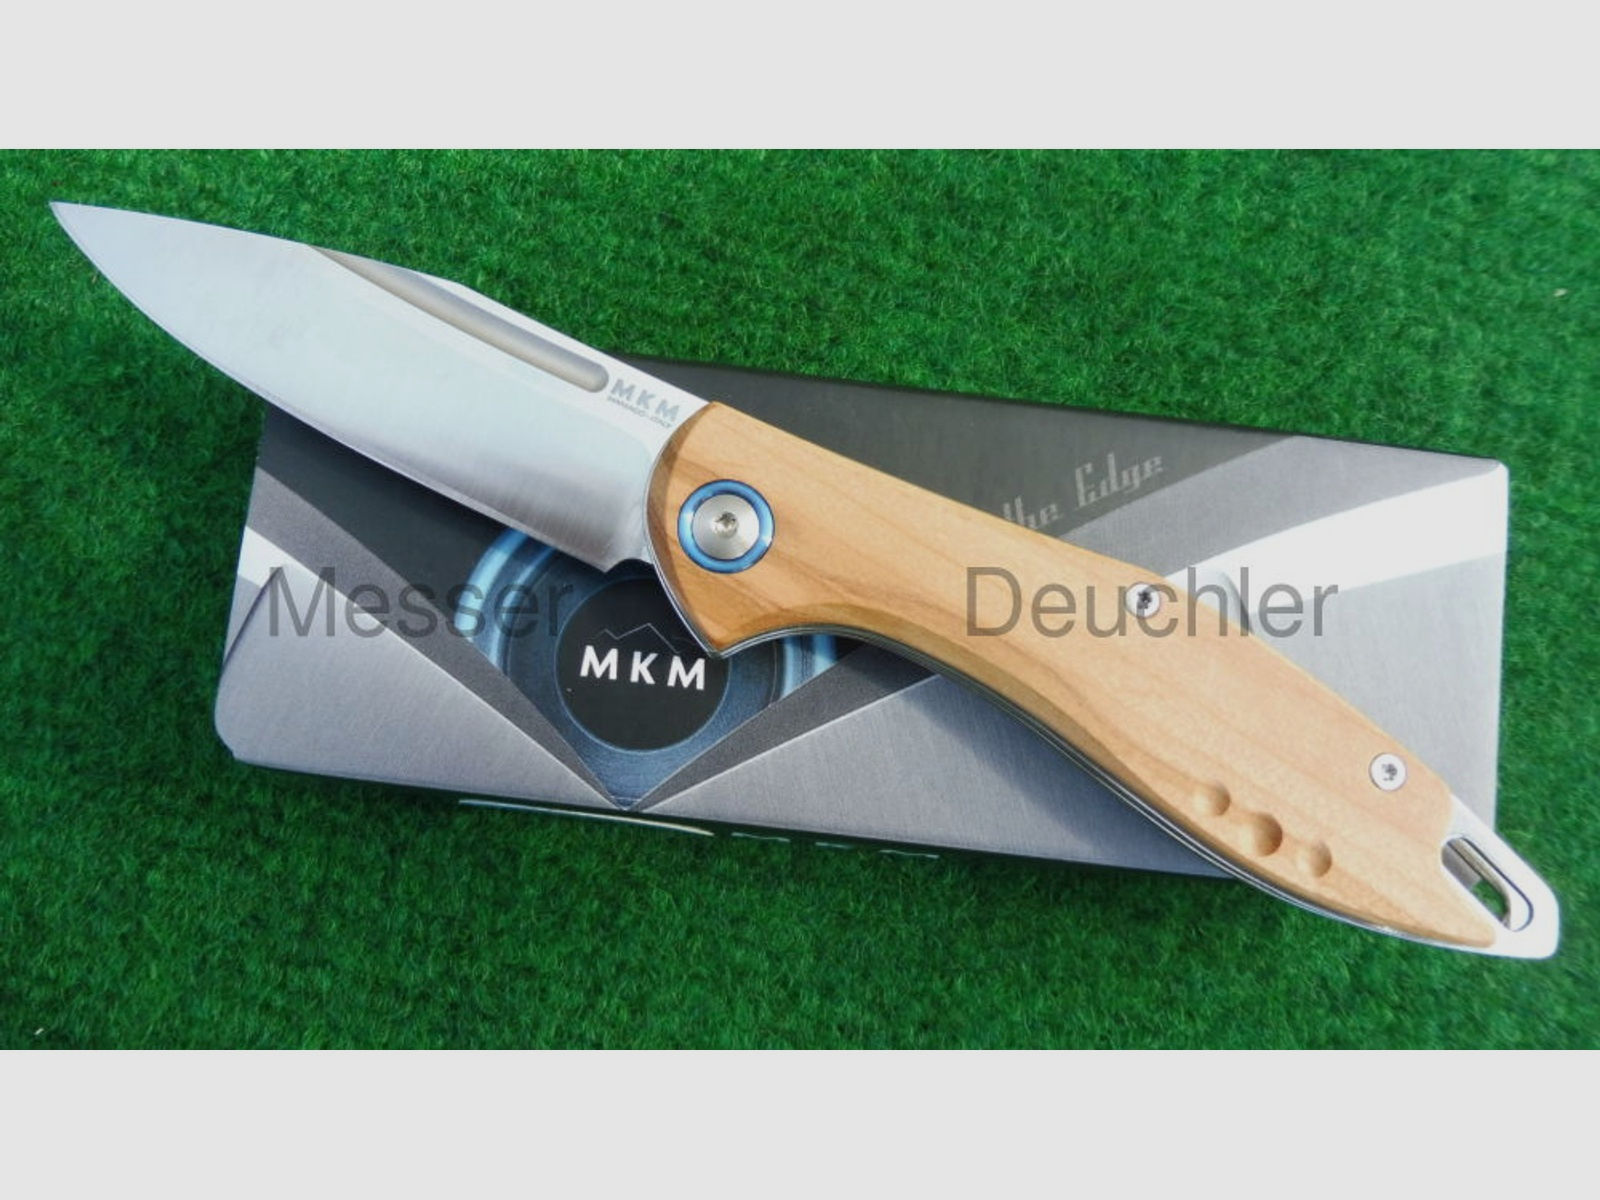 MKM Maniago Knife Makers	 MKM FARA M390 Messer Stahl Olivenholz Design by Lucas Burnley